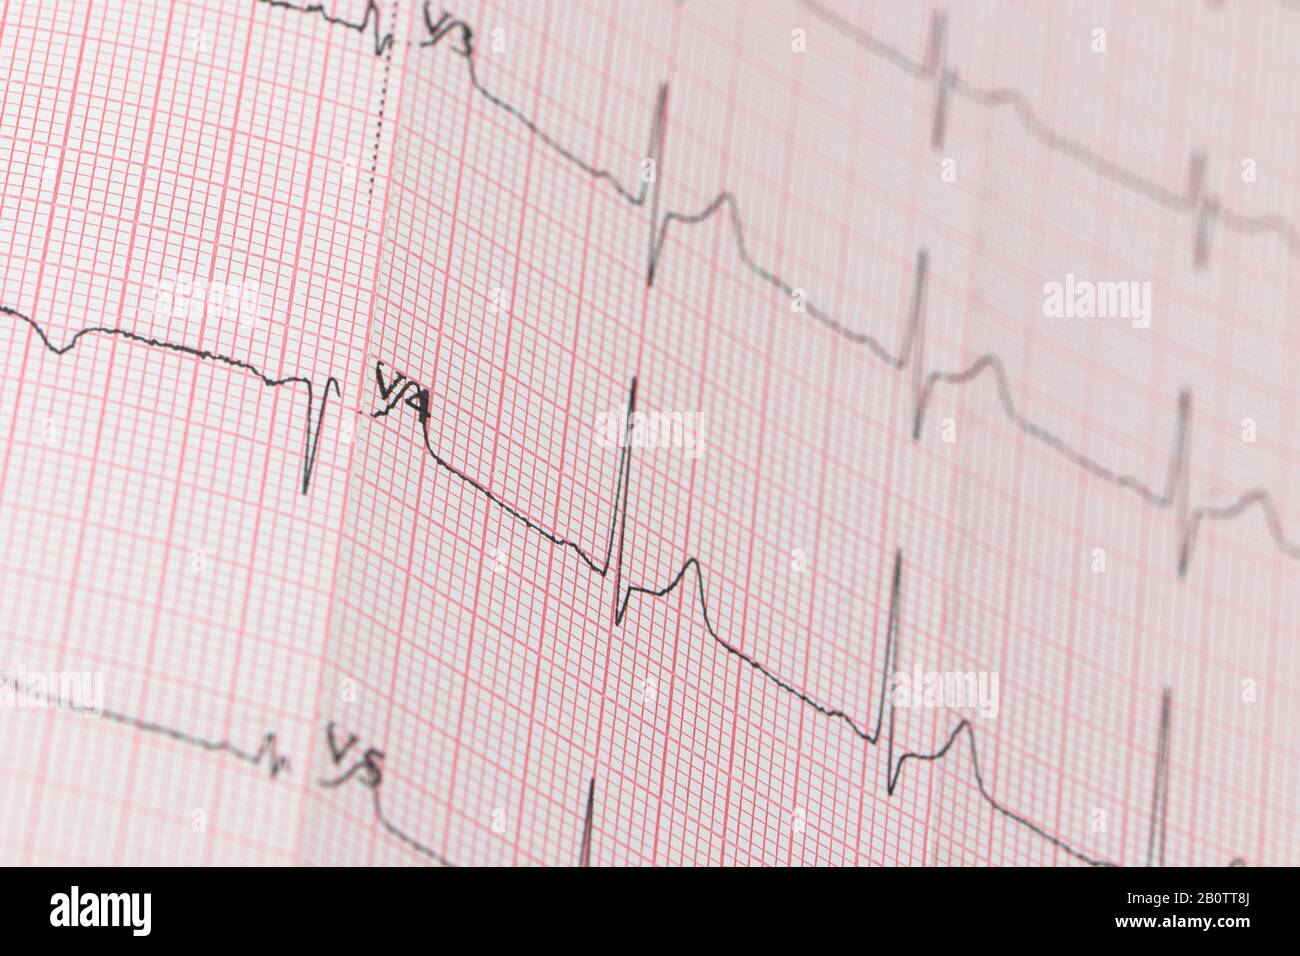 Reelle Linie eines elektroikalen Kardiogramms Stockfoto